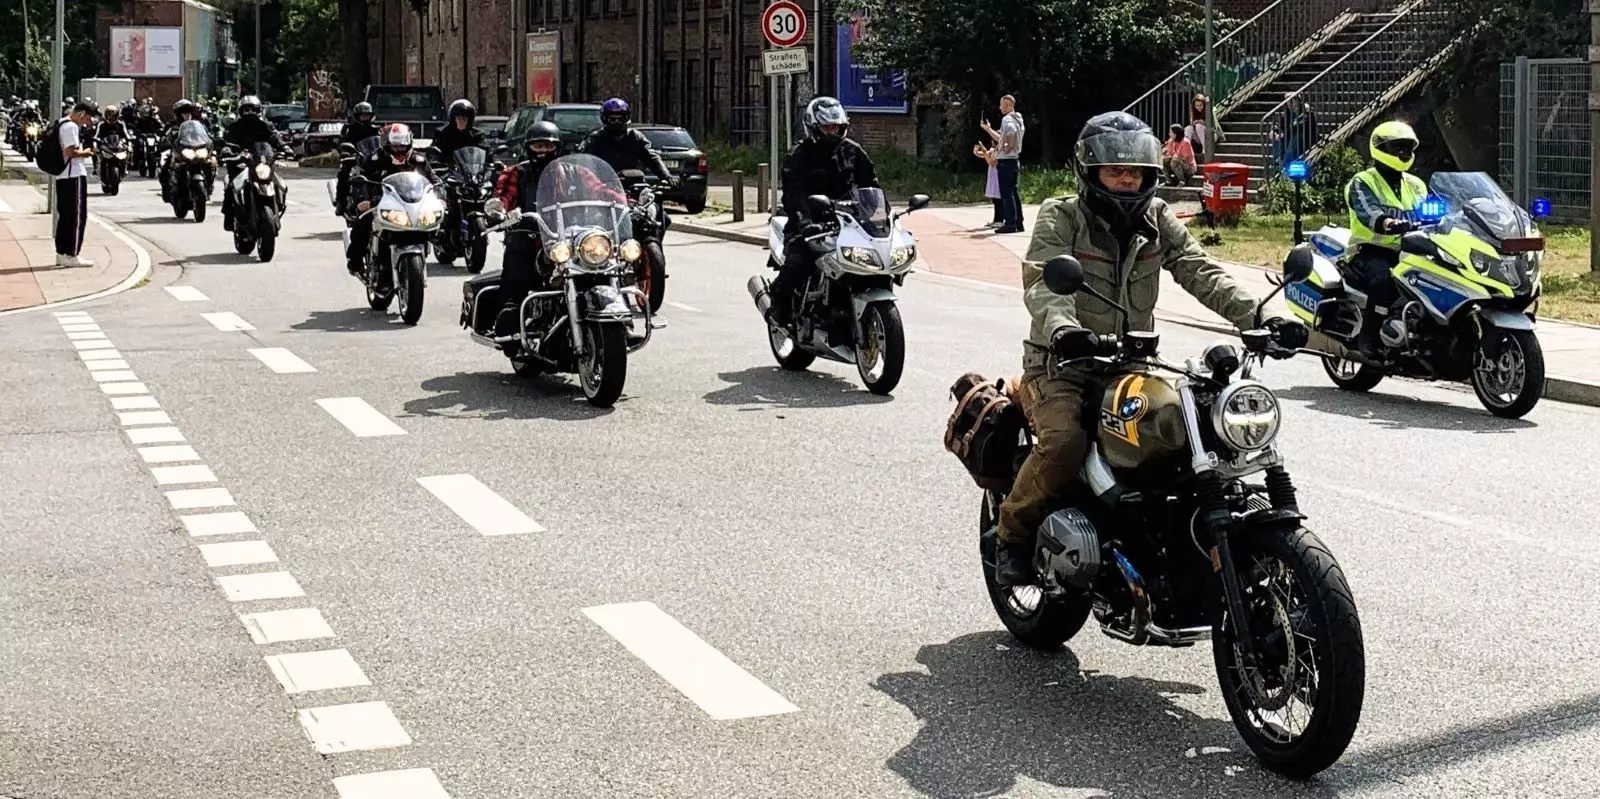 Motorrad-Konvoi im Binnenhafen